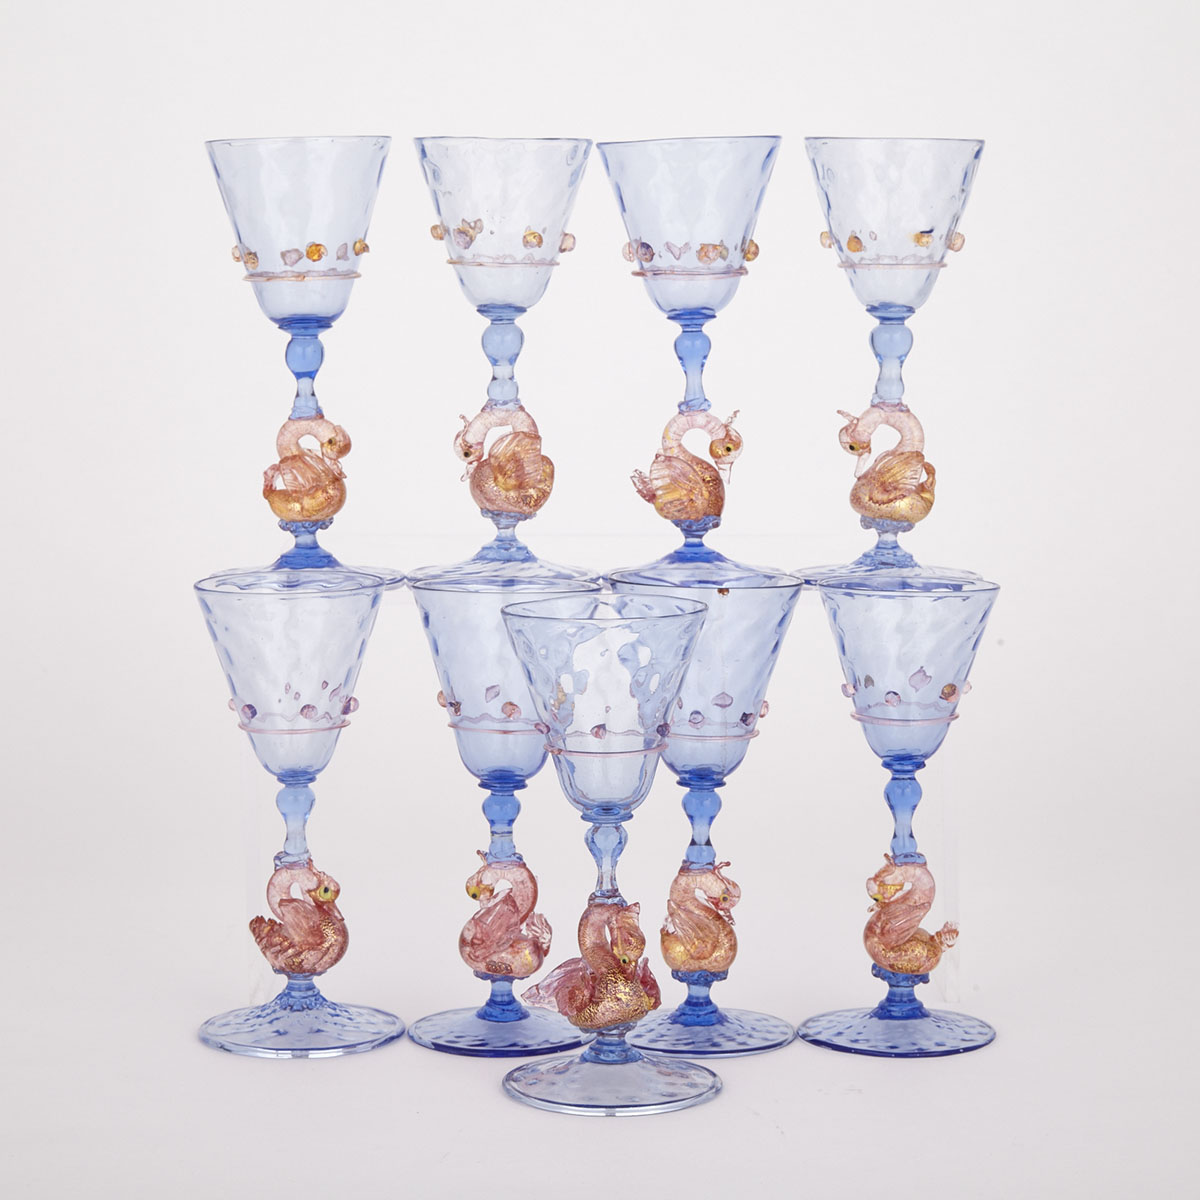 Nine Venetian Swan Stemmed Wine Glasses, 20th century